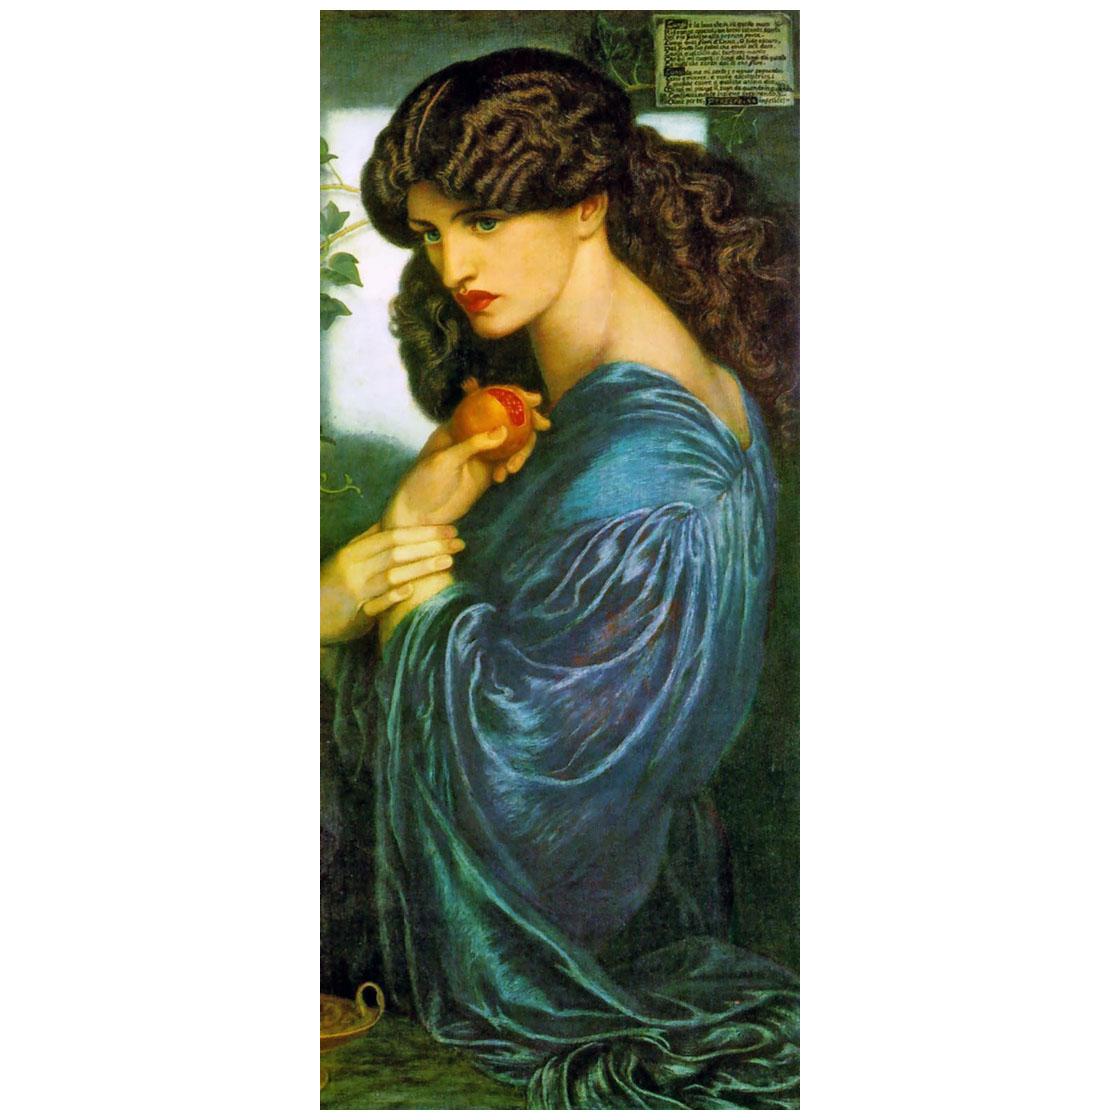 Dante Gabriel Rossetti. Proserpine. 1874. Tate Britain